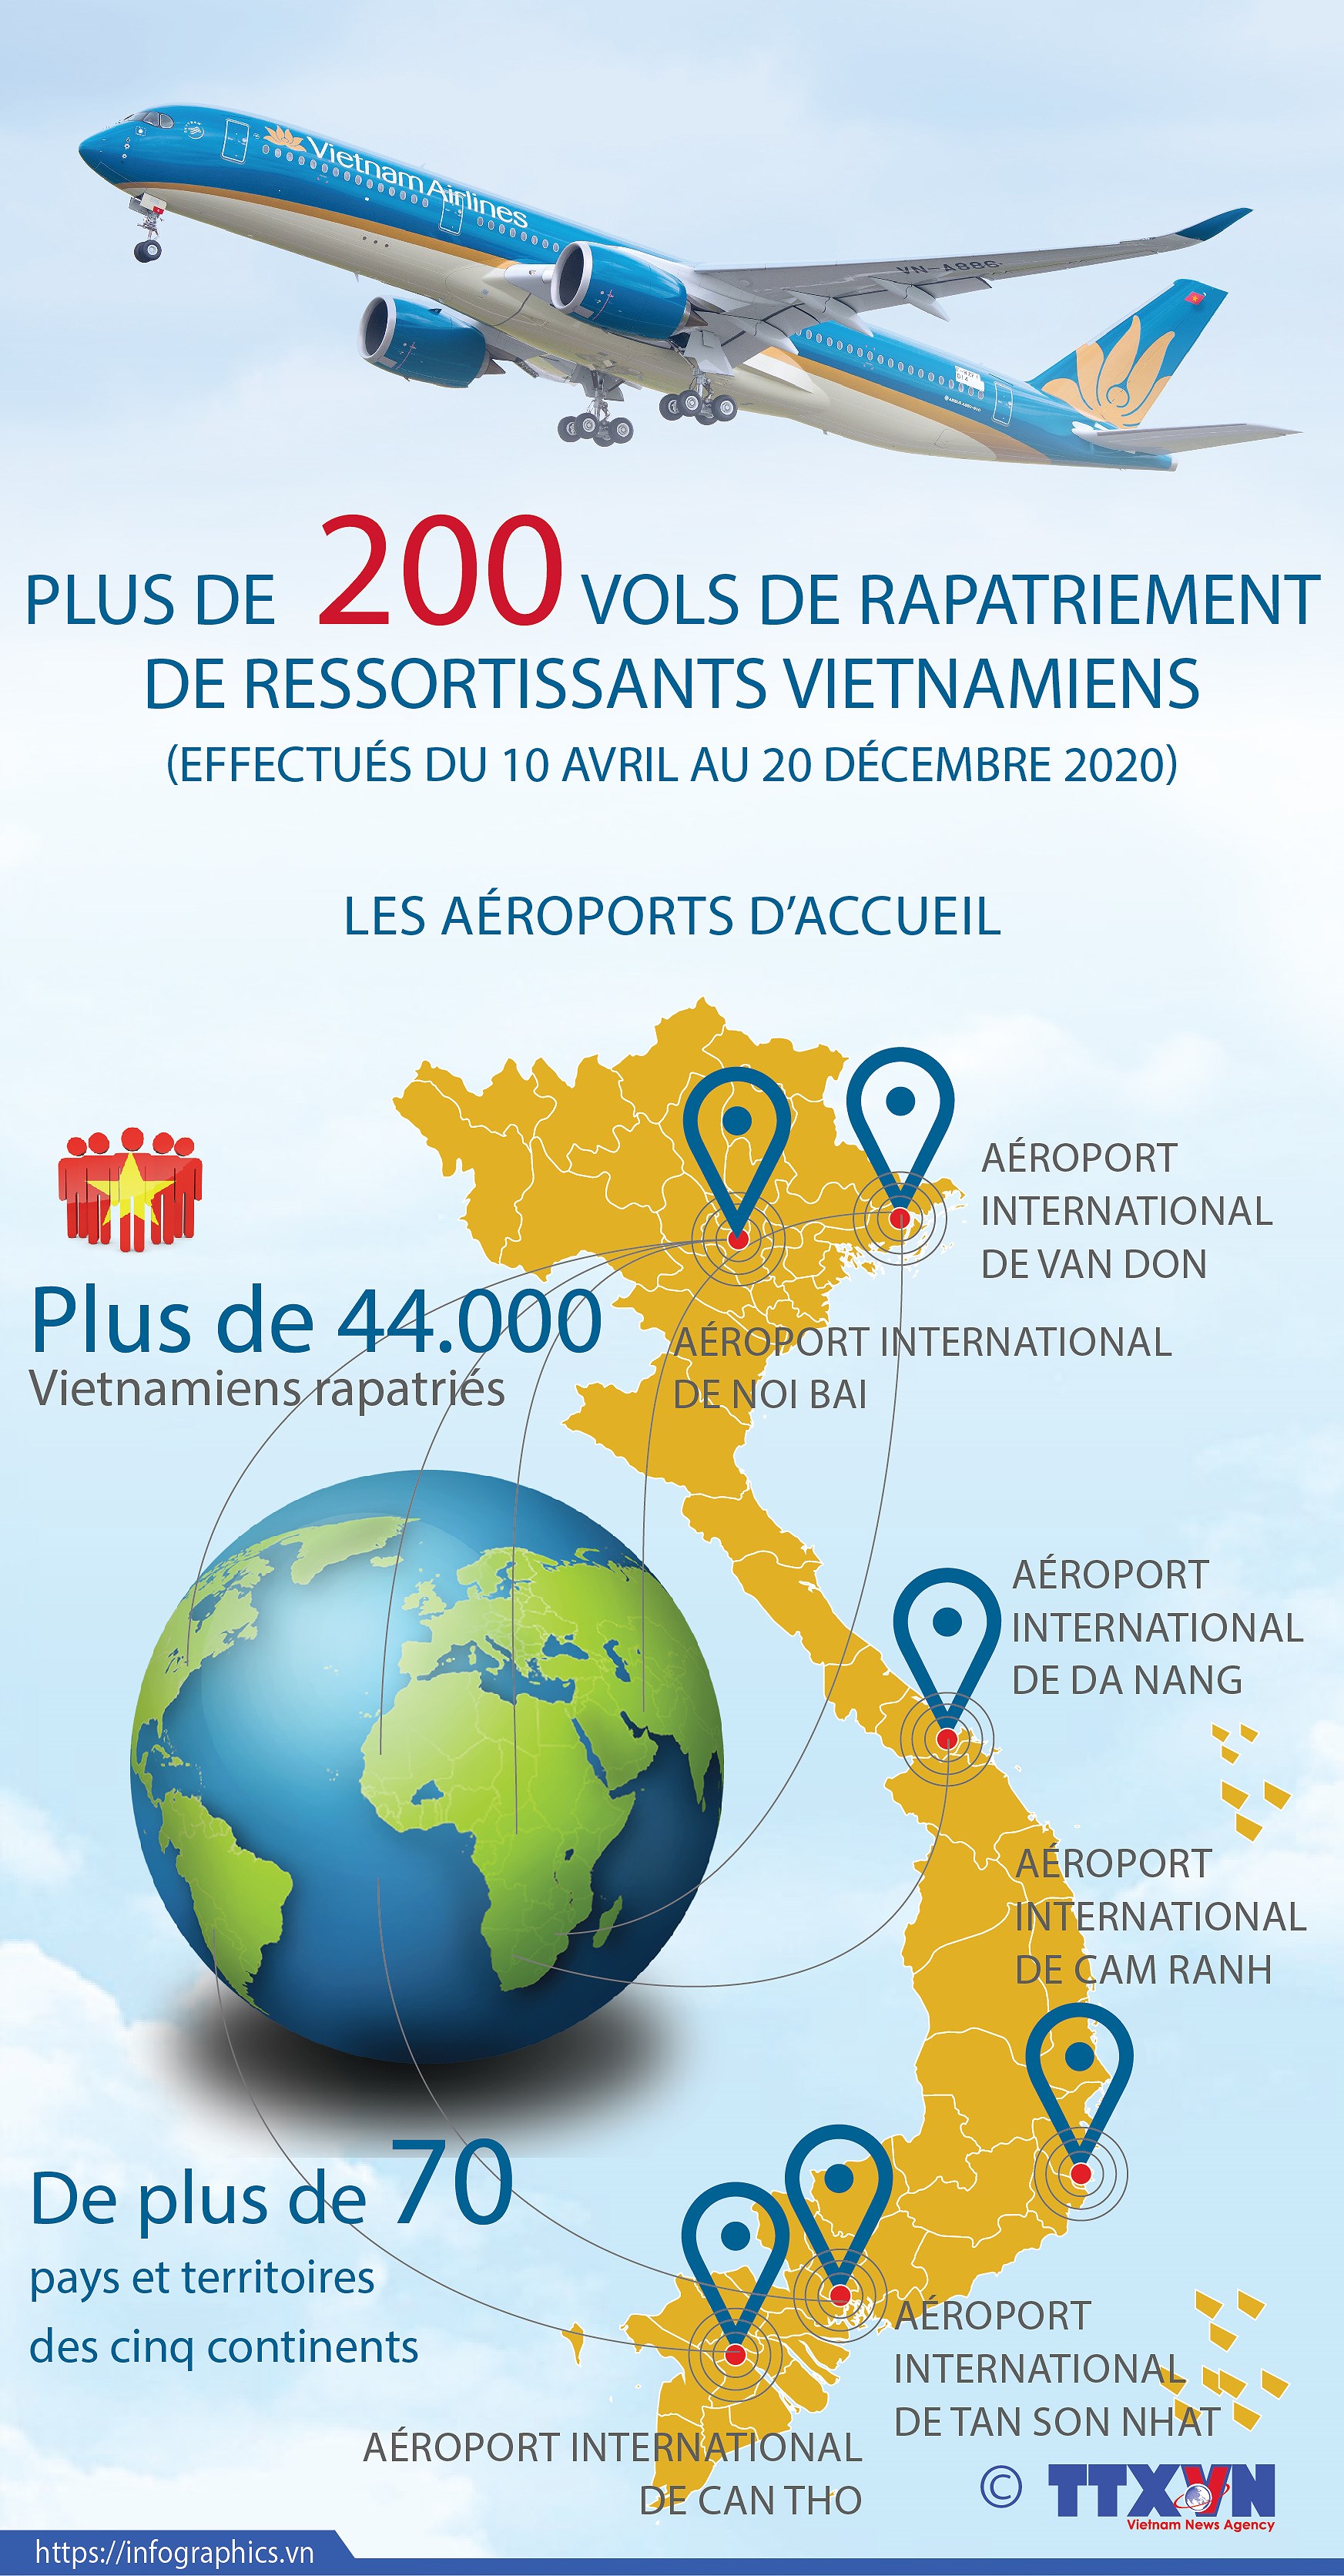 Plus de 200 vols de rapatriement de ressortissants vietnamiens effectues du 10 avril au 20 decembre hinh anh 1